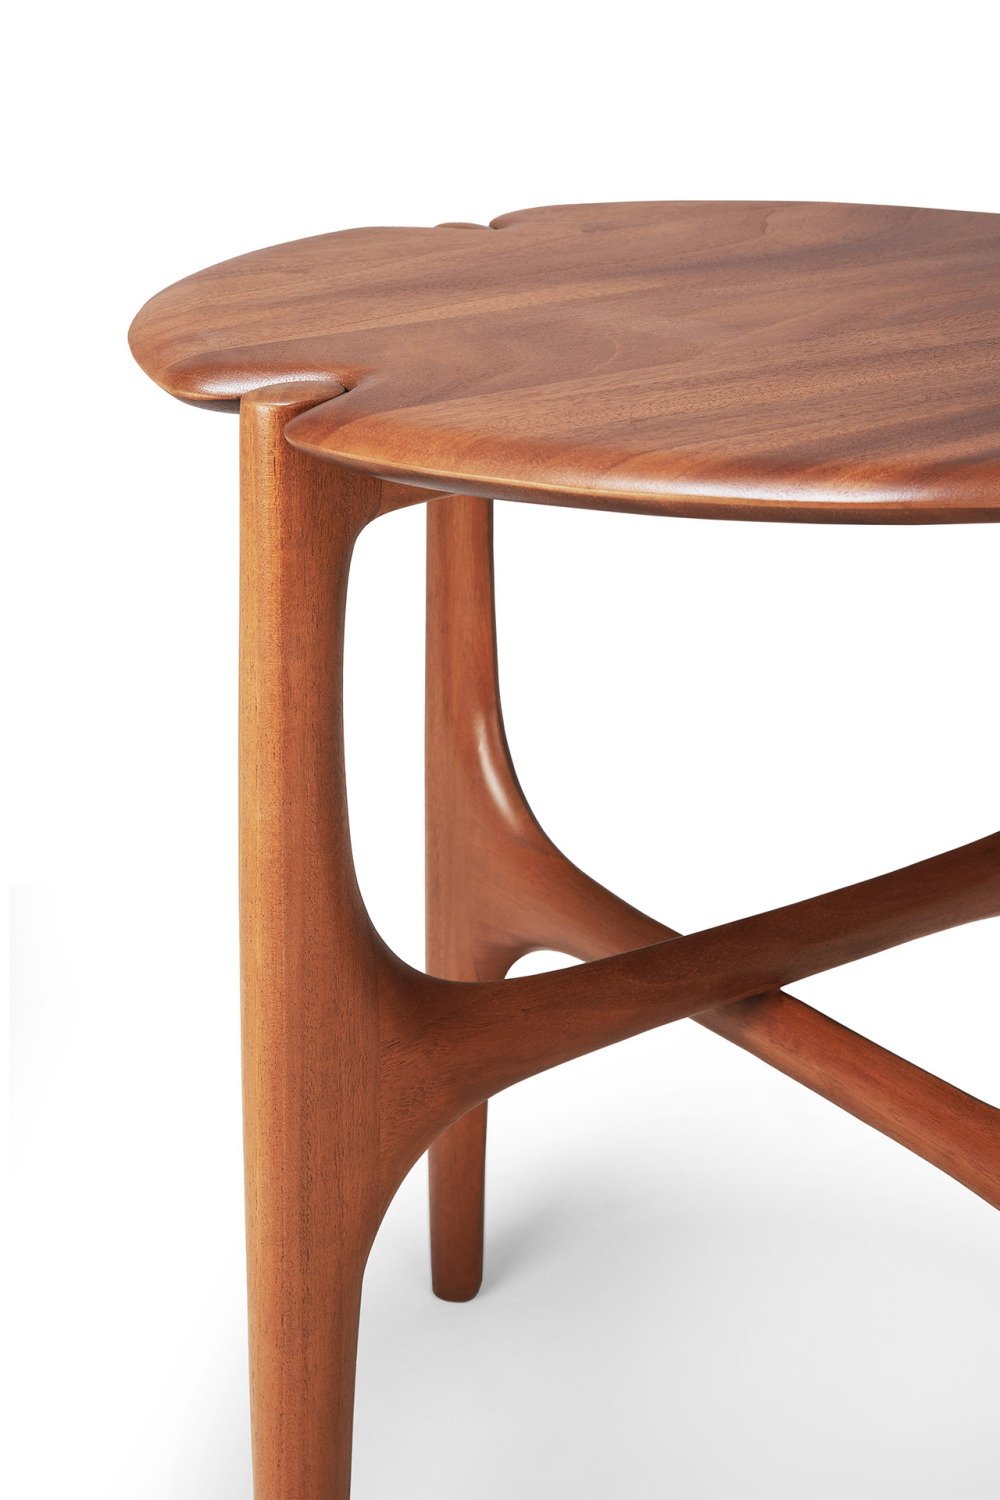 Varnished Round Side Table | Ethnicraft PI | Woodfurniture.com